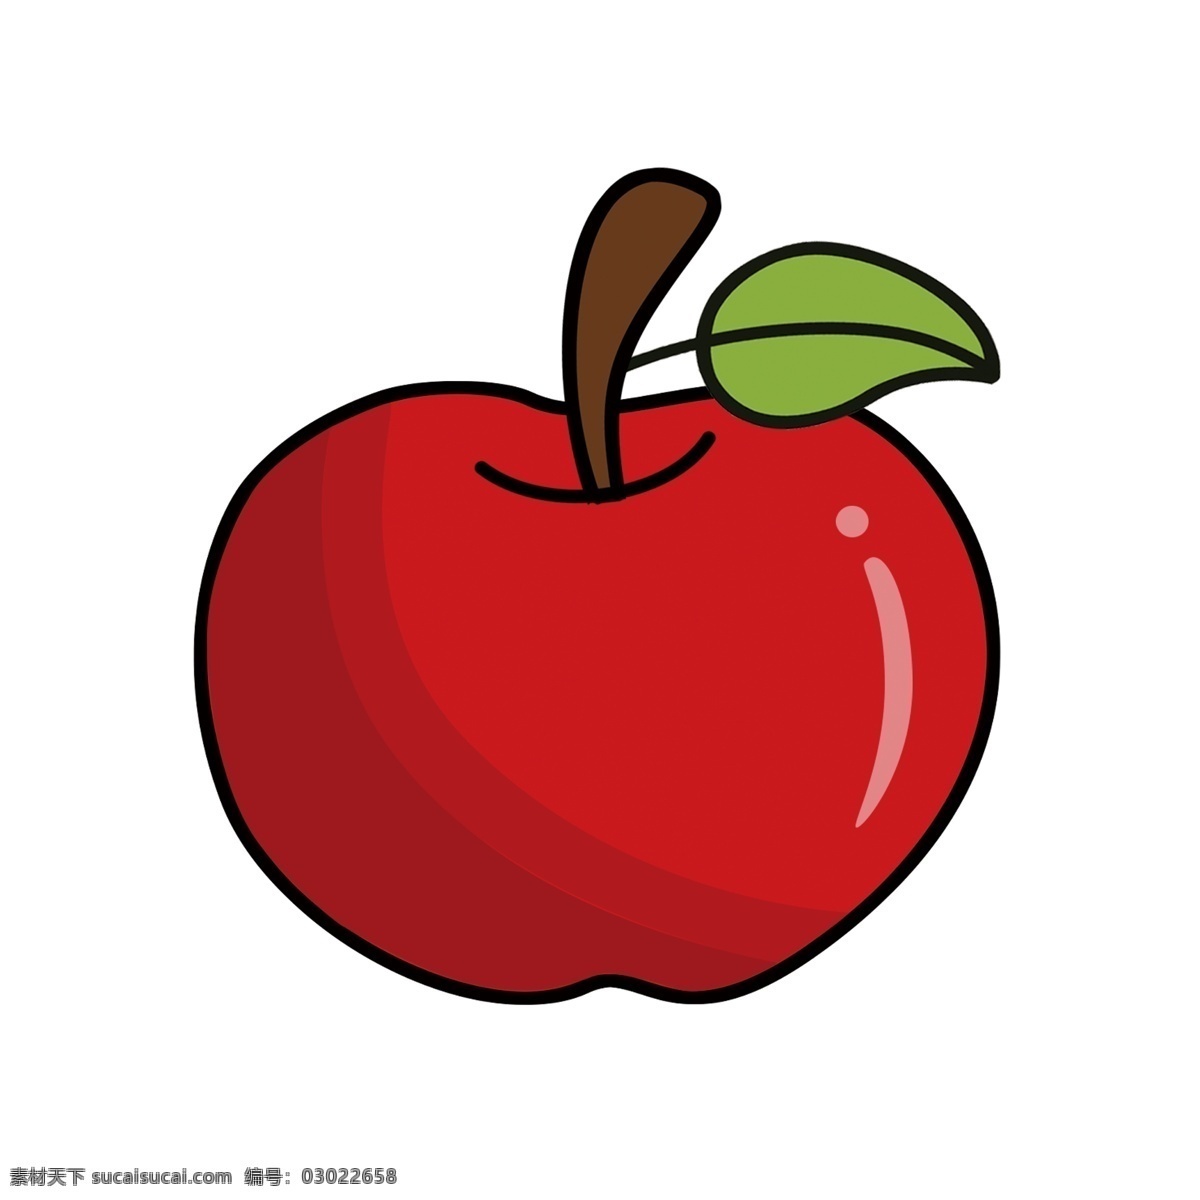 卡通 红苹果 素材图片 苹果 卡通苹果 矢量卡通苹果 手绘苹果 矢量手绘苹果 苹果素材 卡通水果 手绘水果 矢量水果 矢量卡通水果 矢量手绘水果 卡通水果素材 设 生物世界 水果